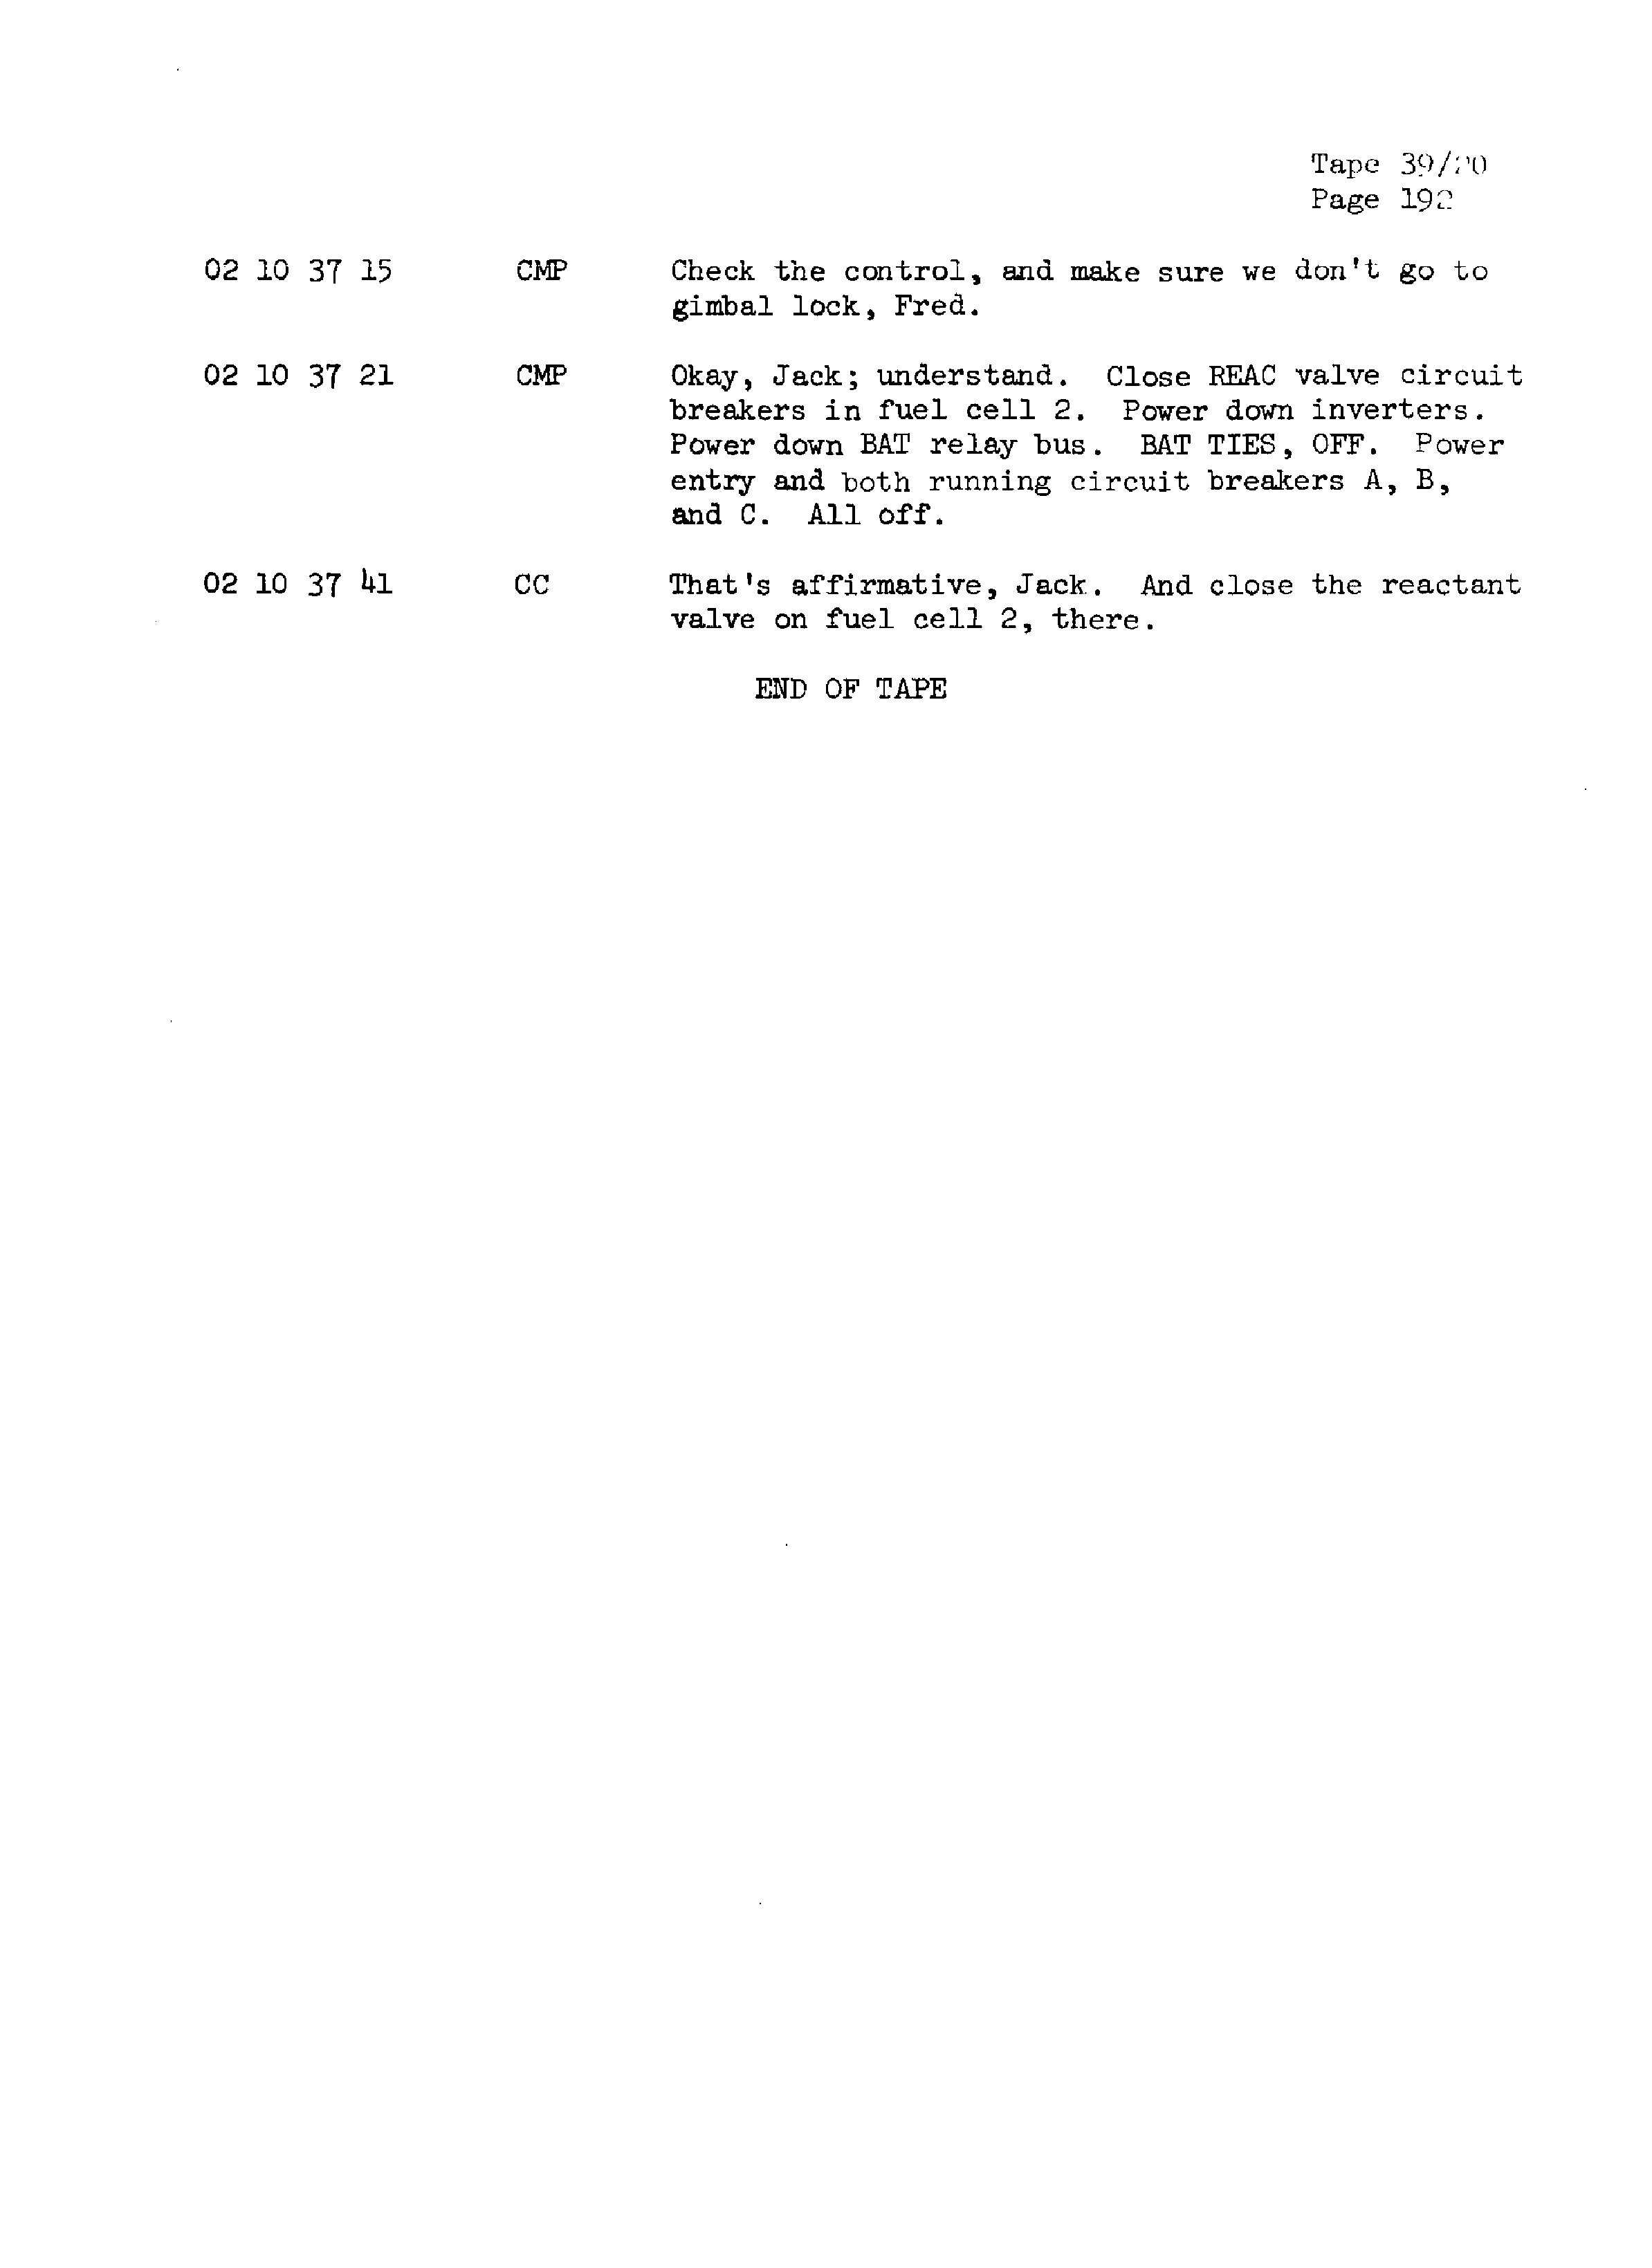 Page 199 of Apollo 13’s original transcript